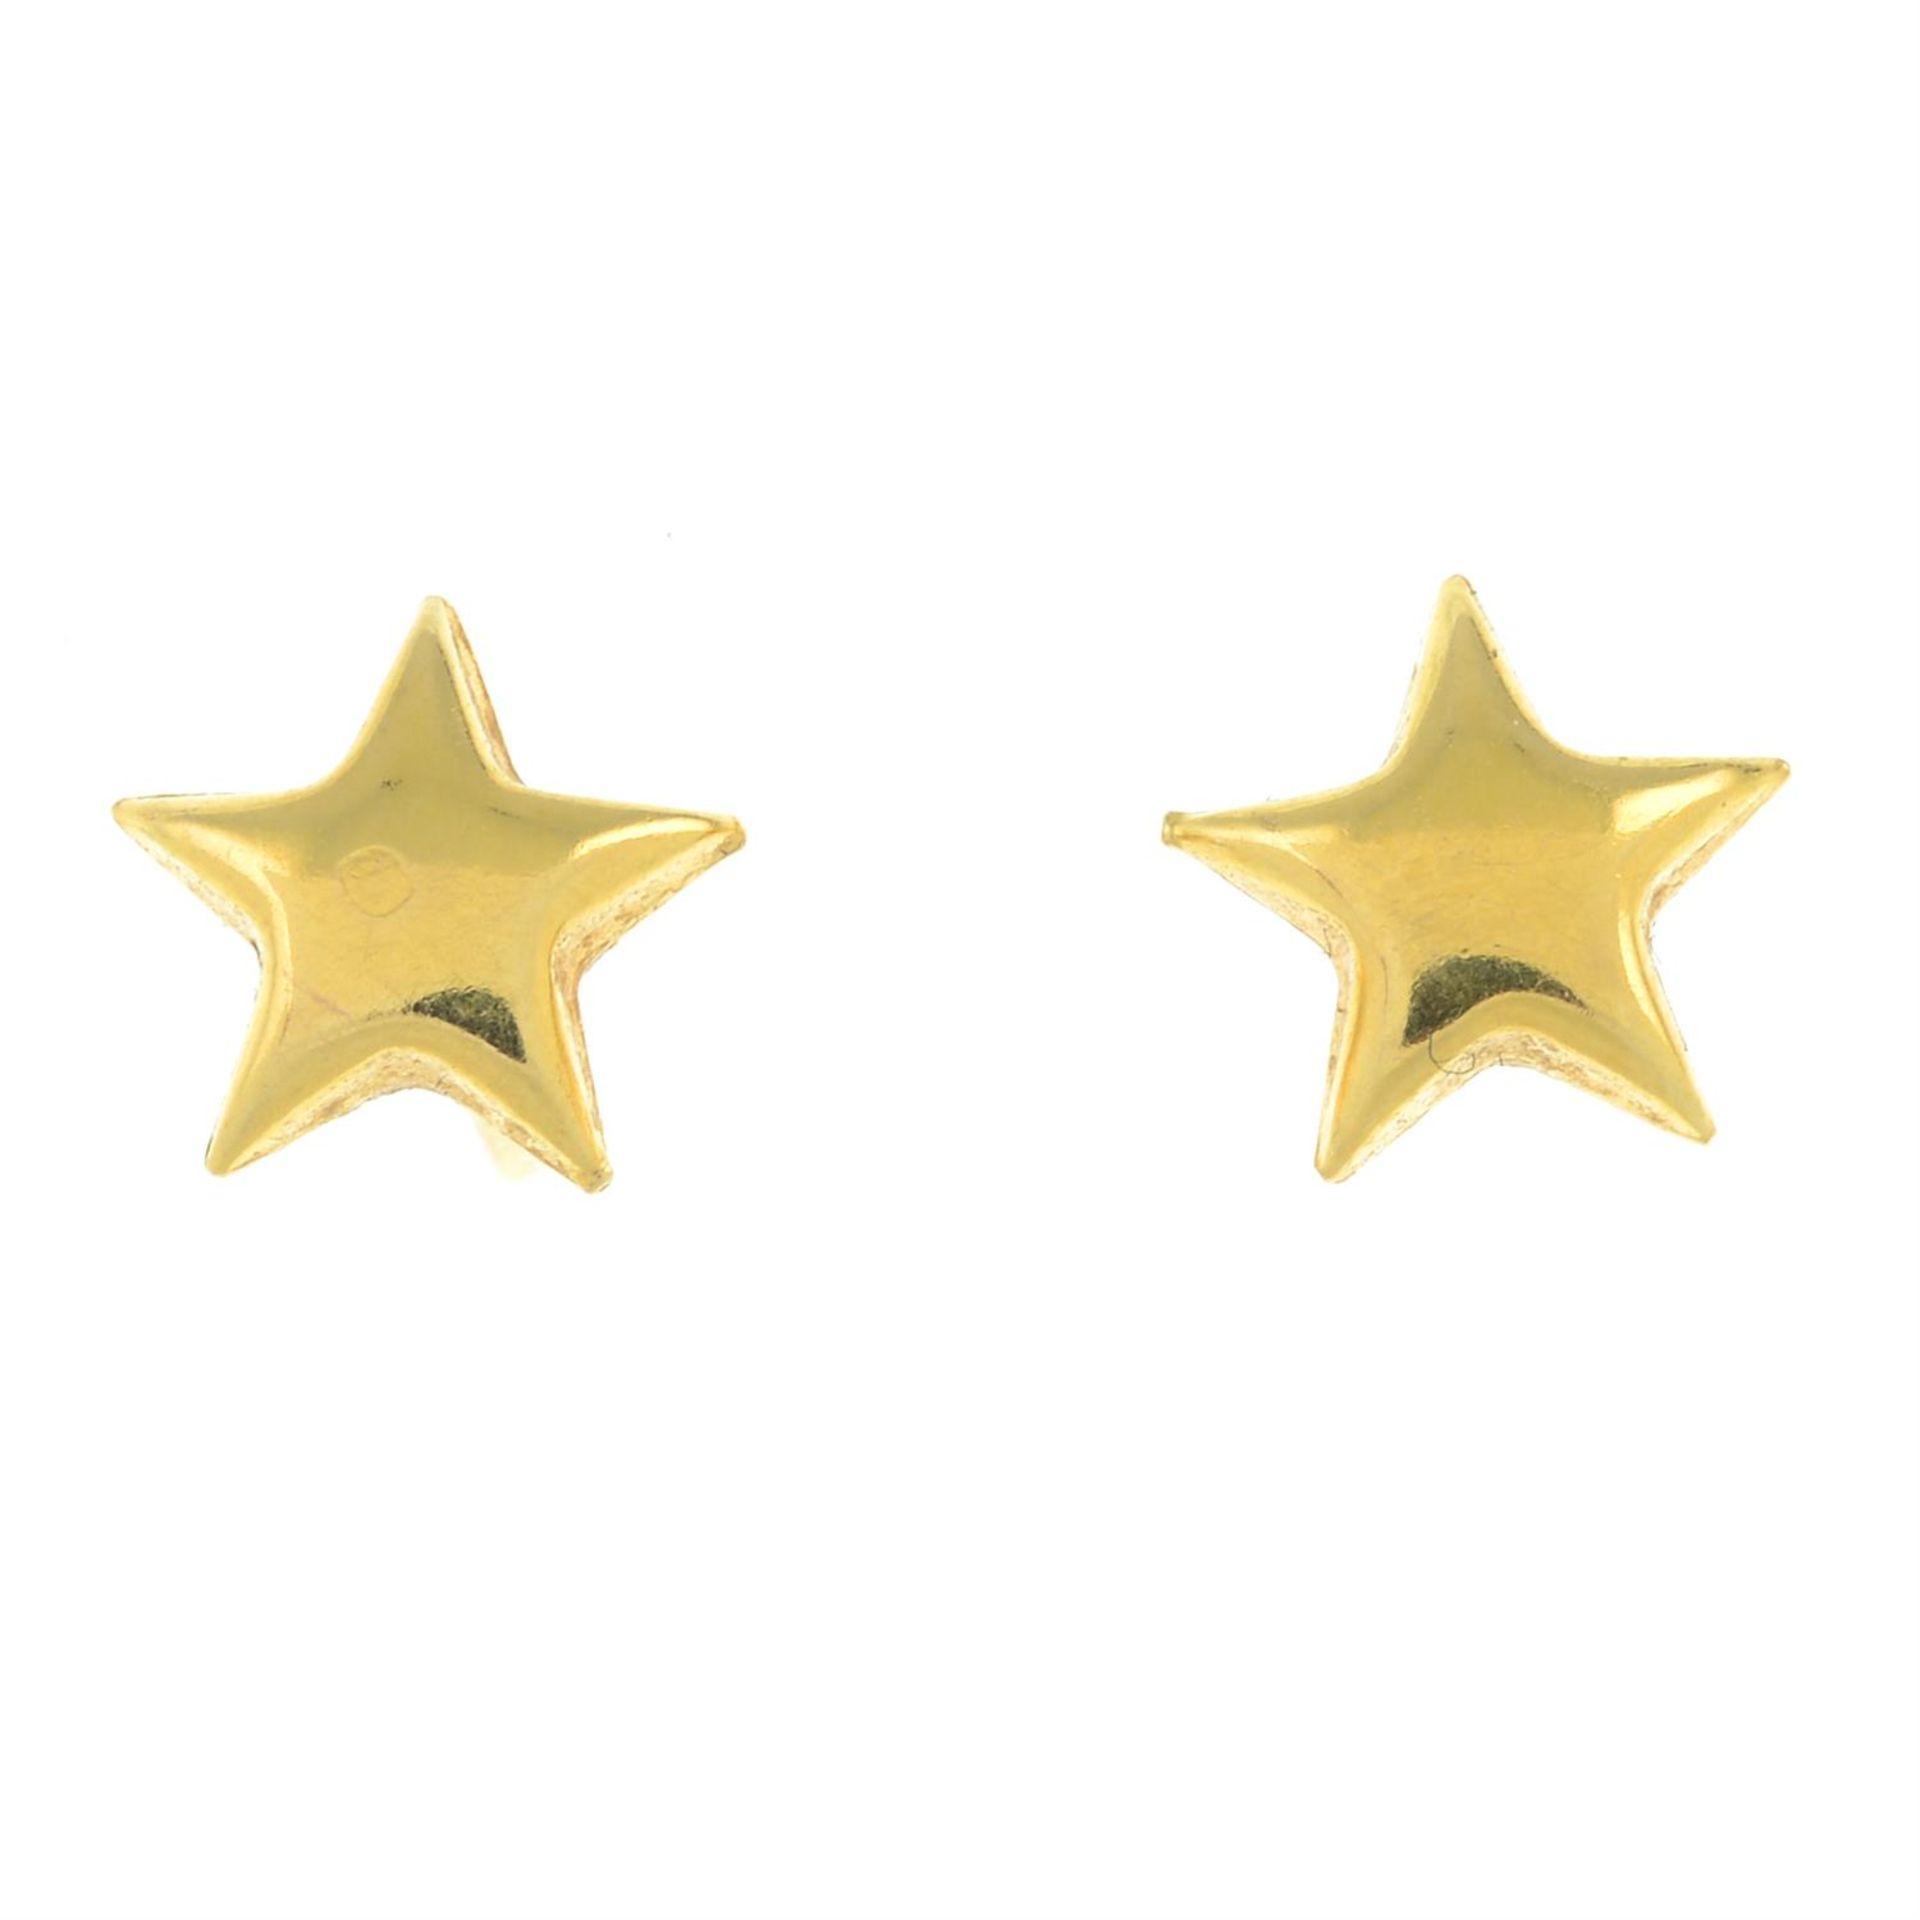 A pair of star stud earrings.